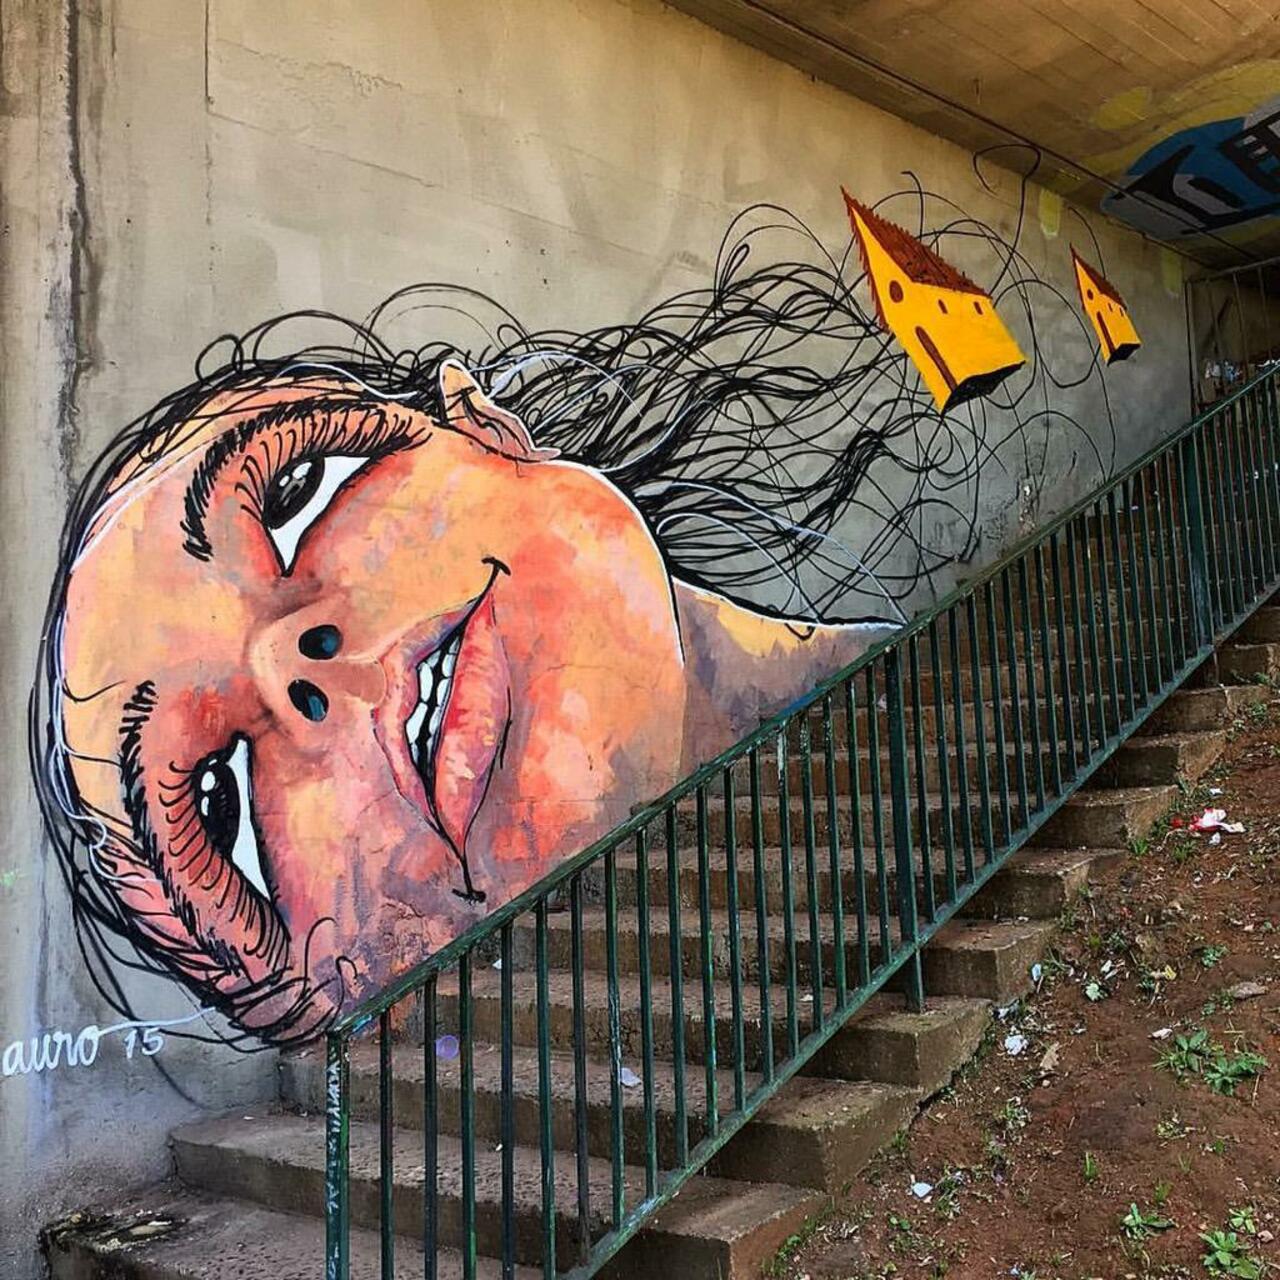 Street Art by Reveracidade in São Paulo 

#art #graffiti #mural #streetart http://t.co/pEmrXAELJV